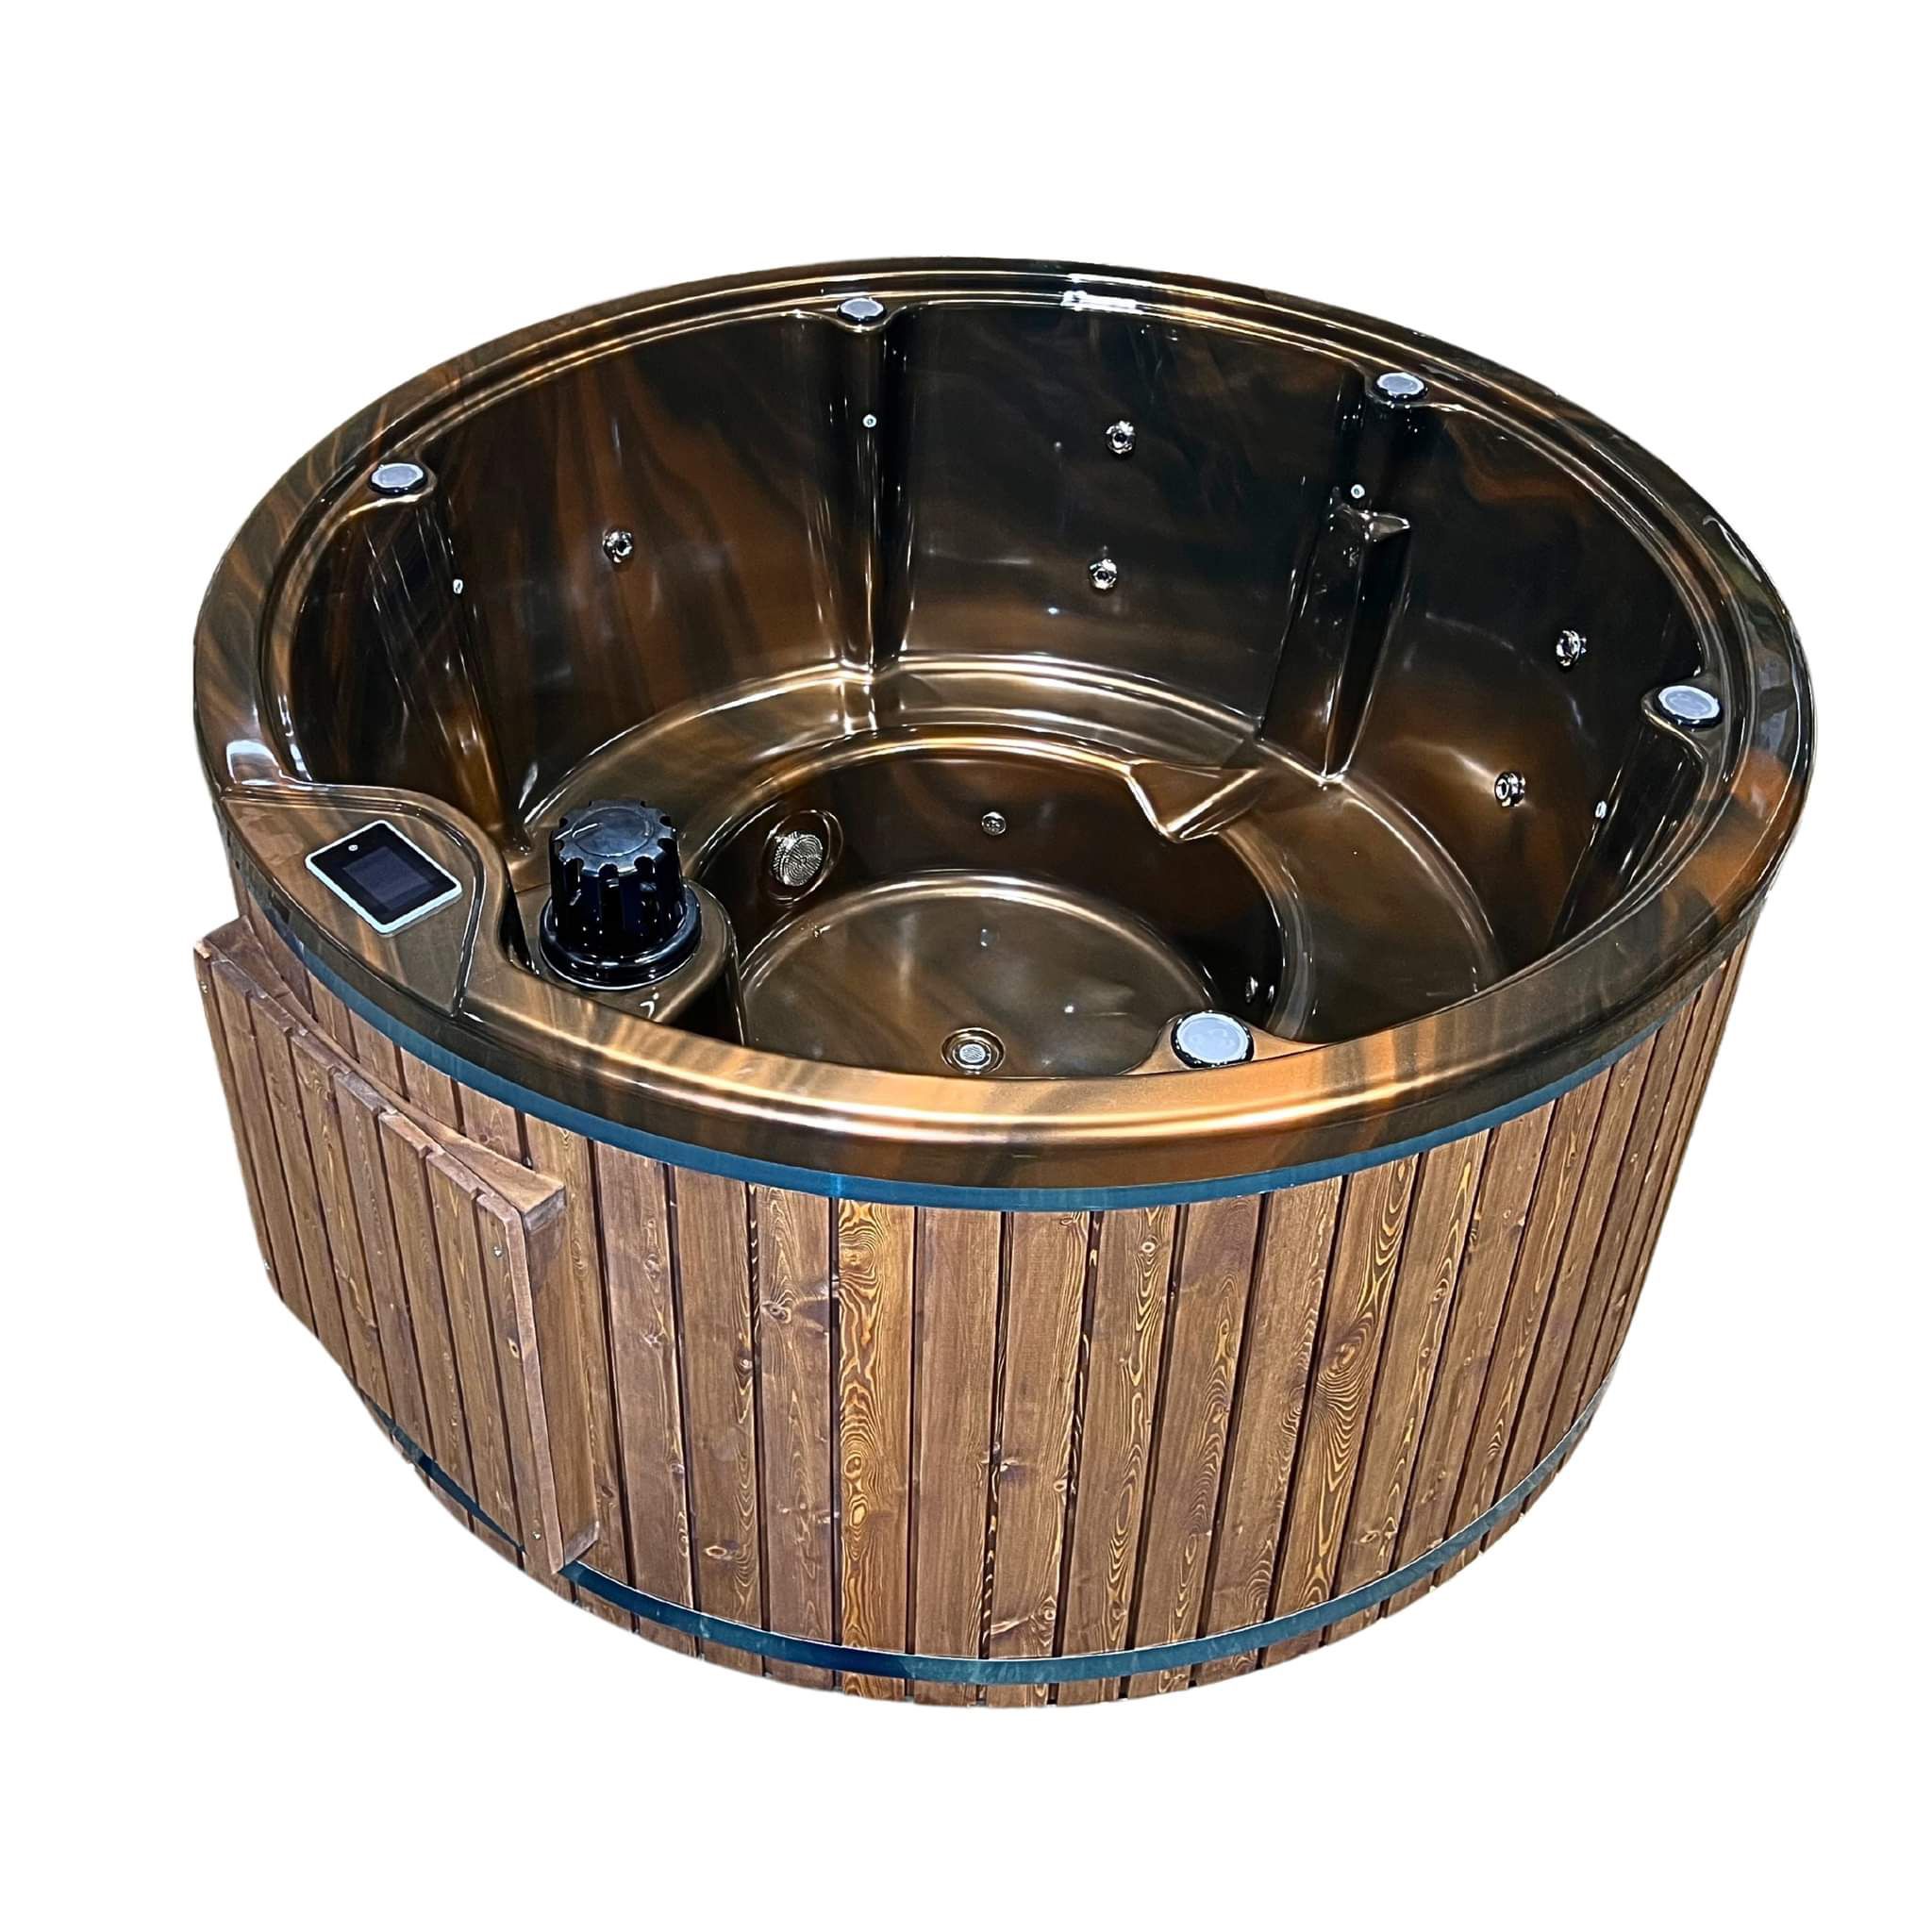 Vasca idromassaggio rivestita in legno ed vasca da bagno da esterno riscaldatile